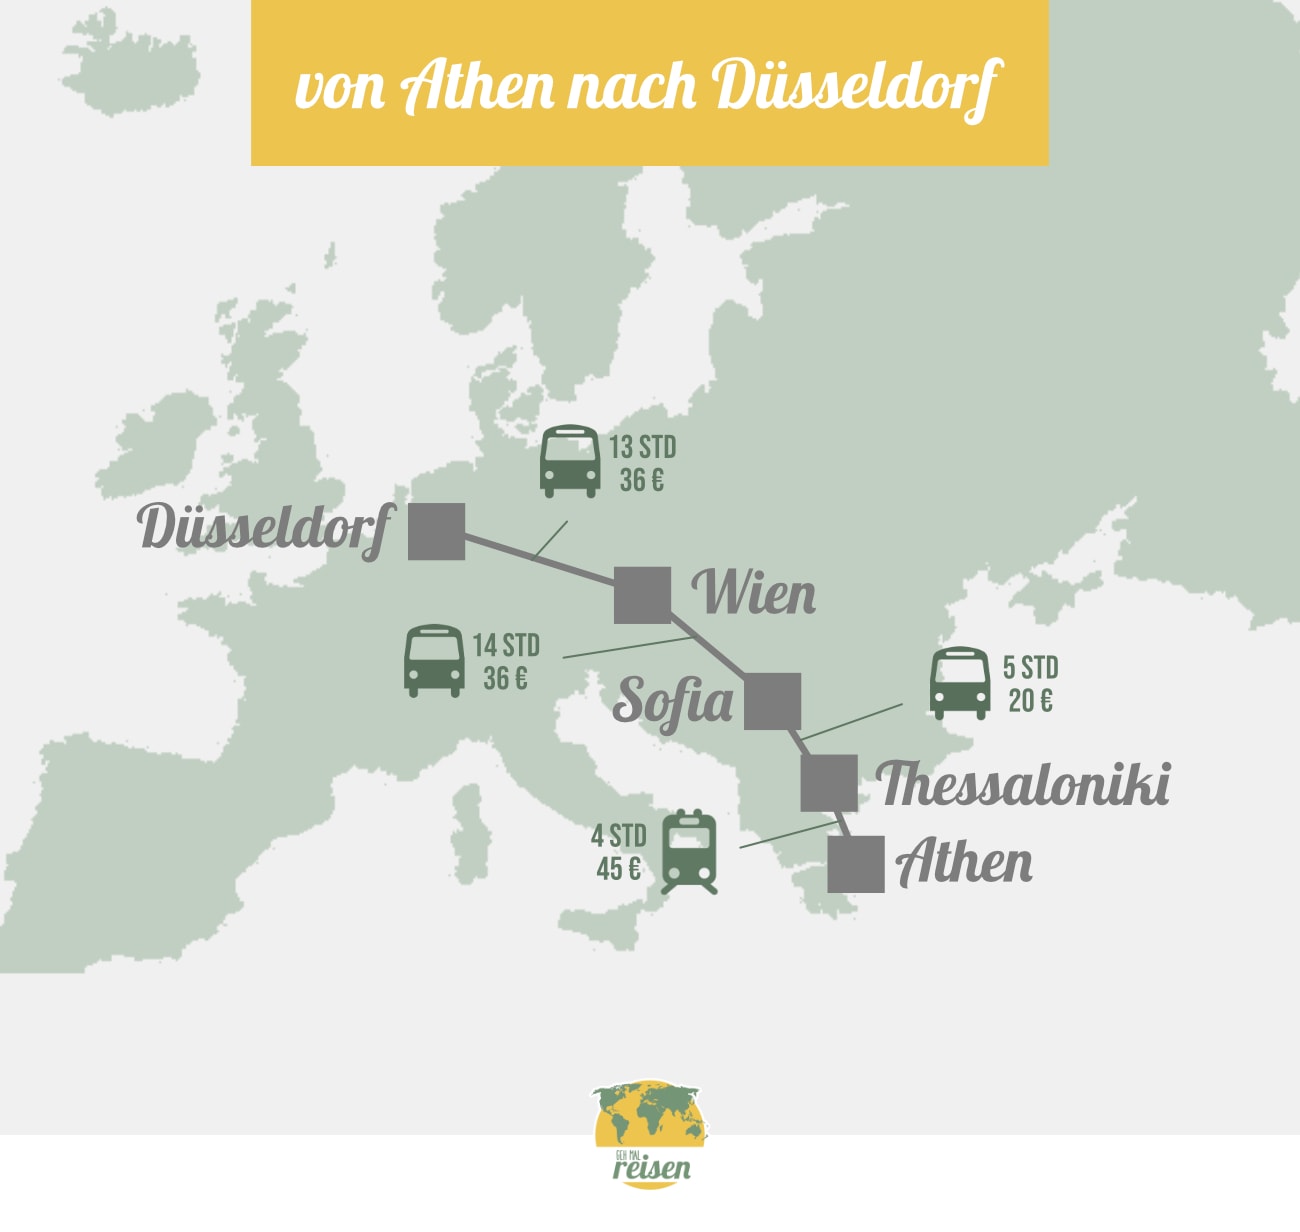 Route von Athen nach Düsseldorf